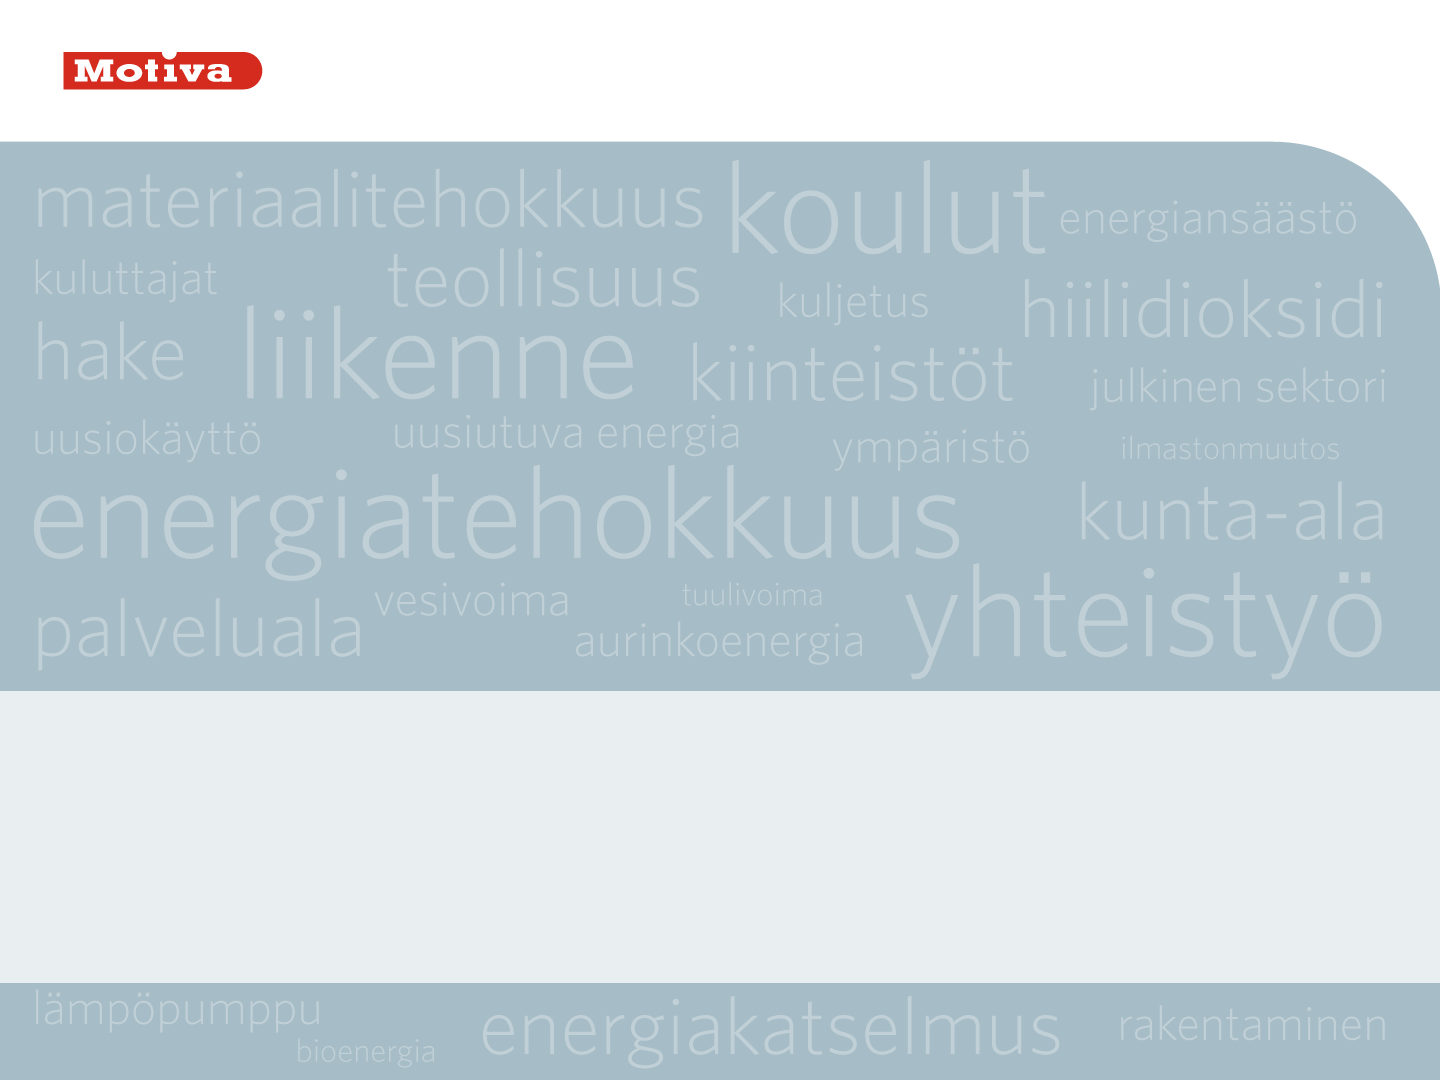 Teollisuuden energiakatselmukset Aalto-yliopisto, Ene-59.